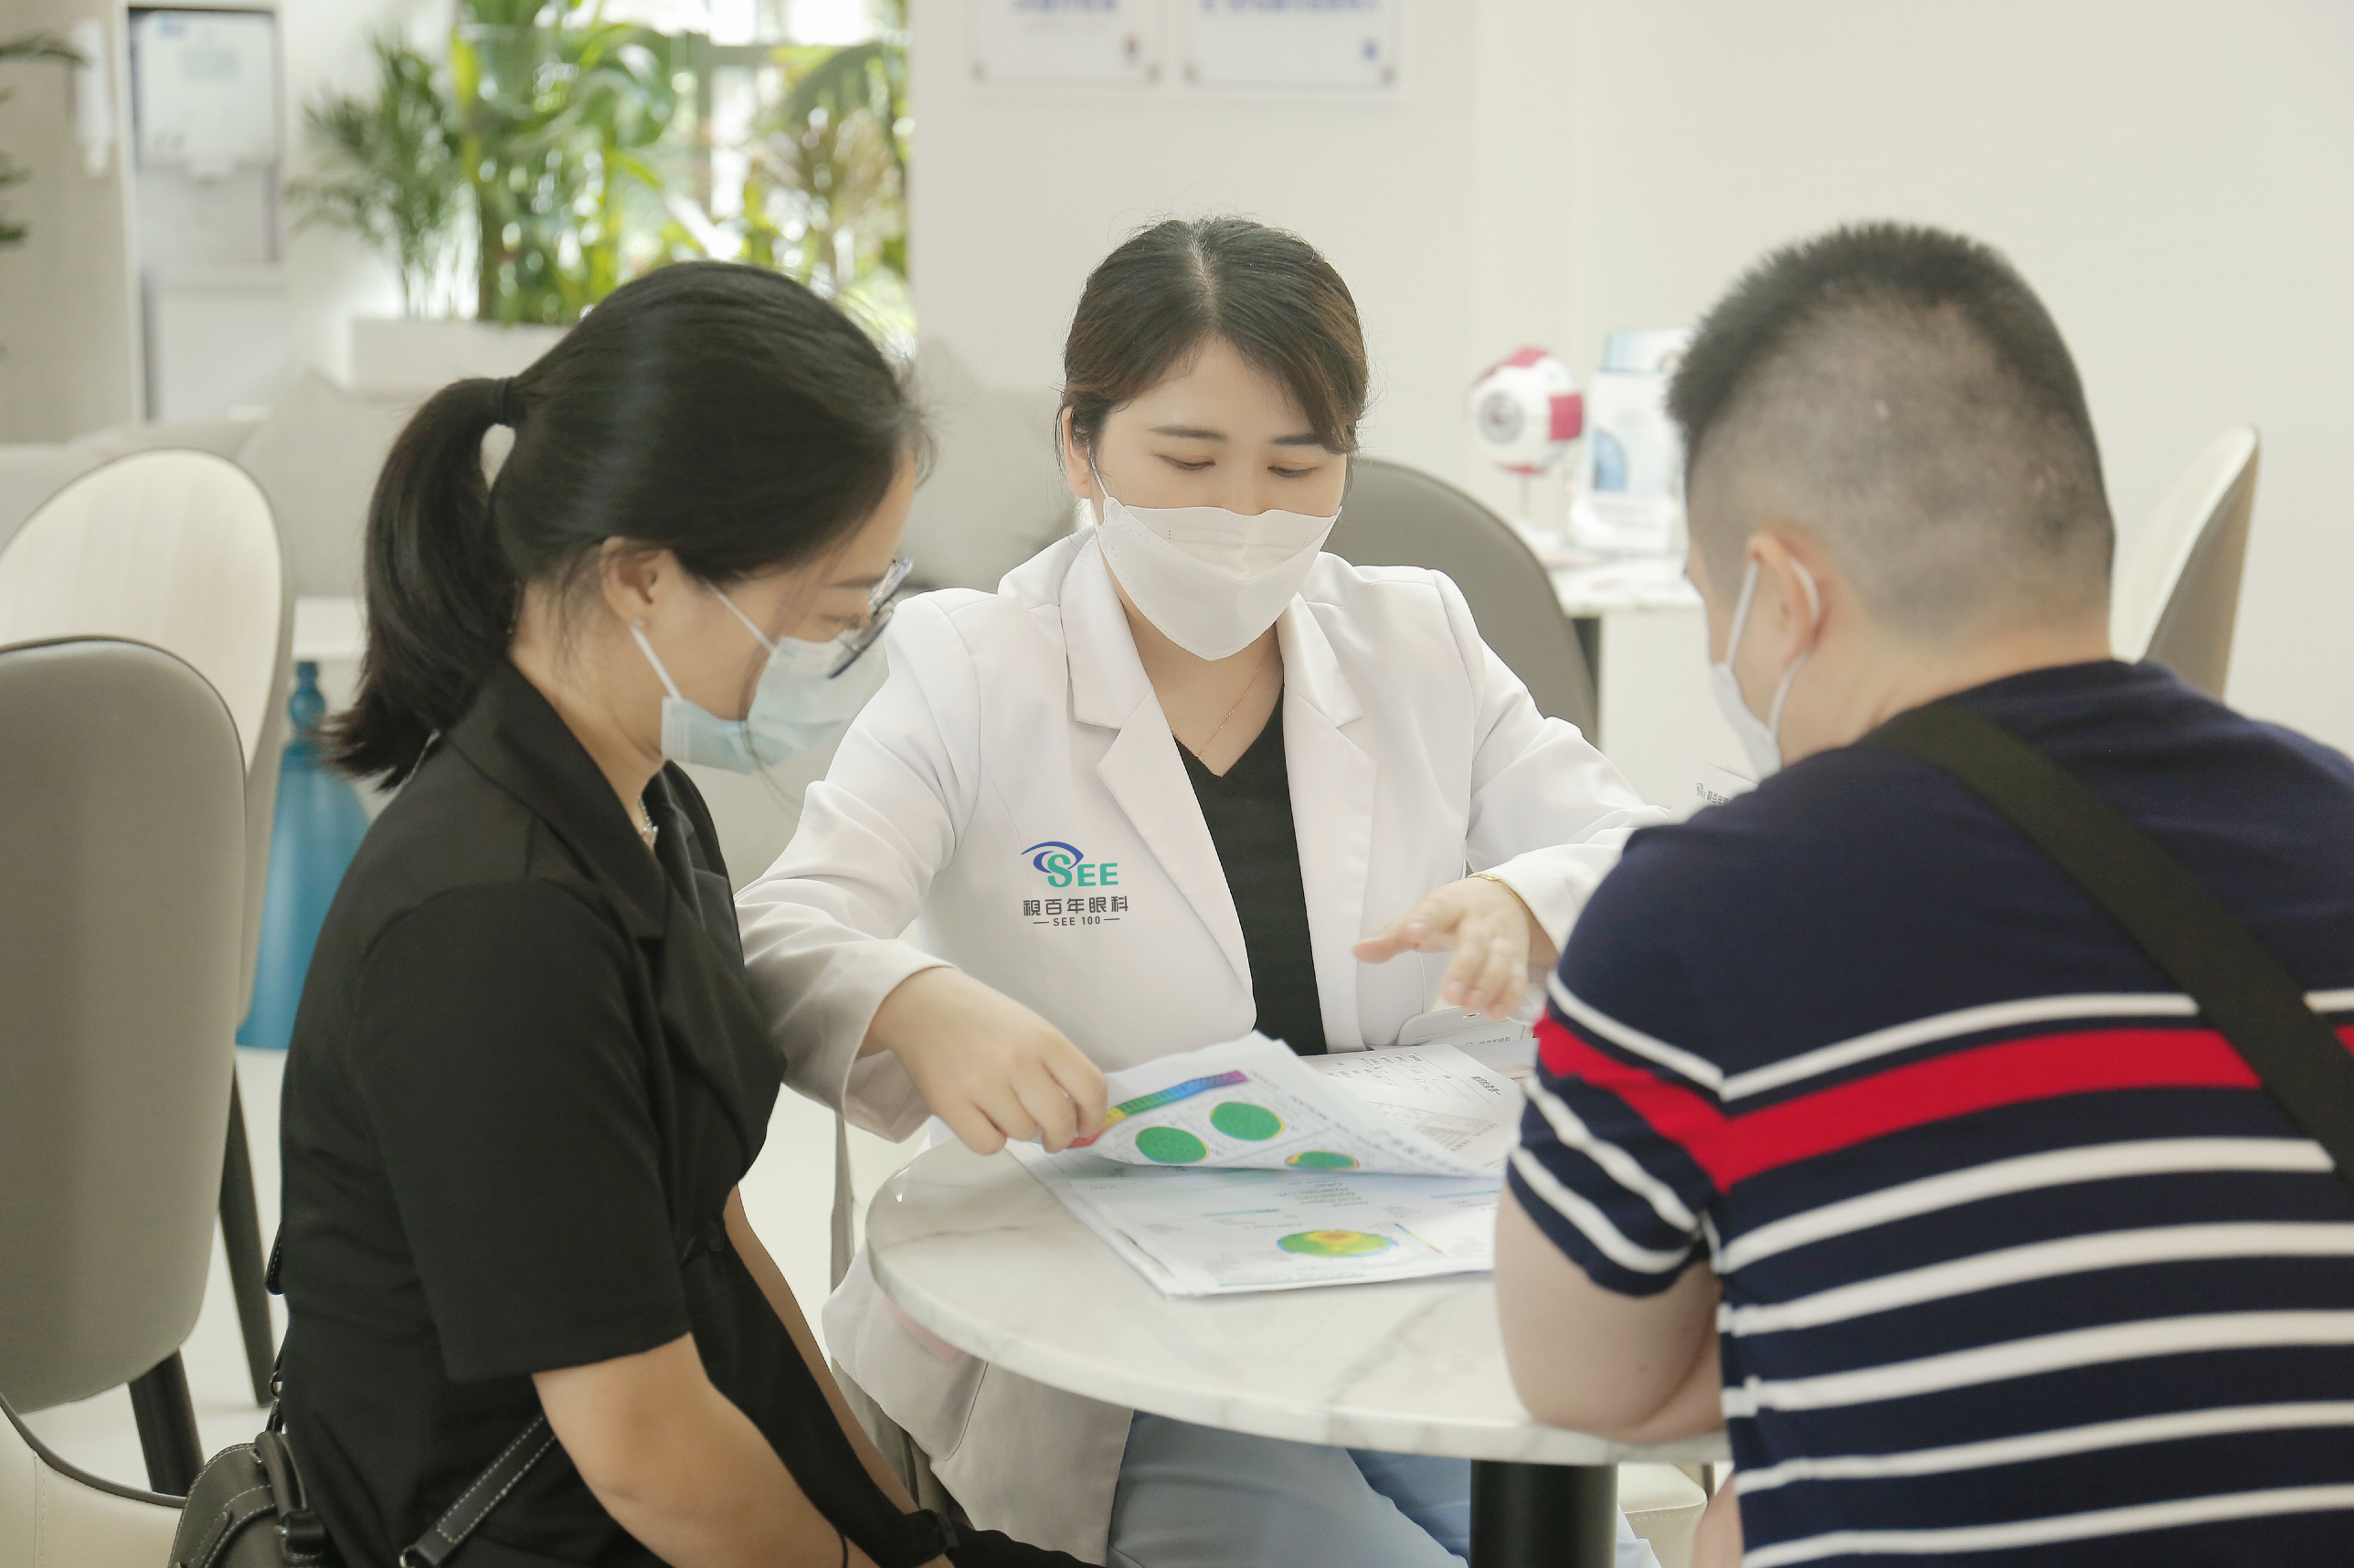 广州近视手术的后遗症要如何避免?